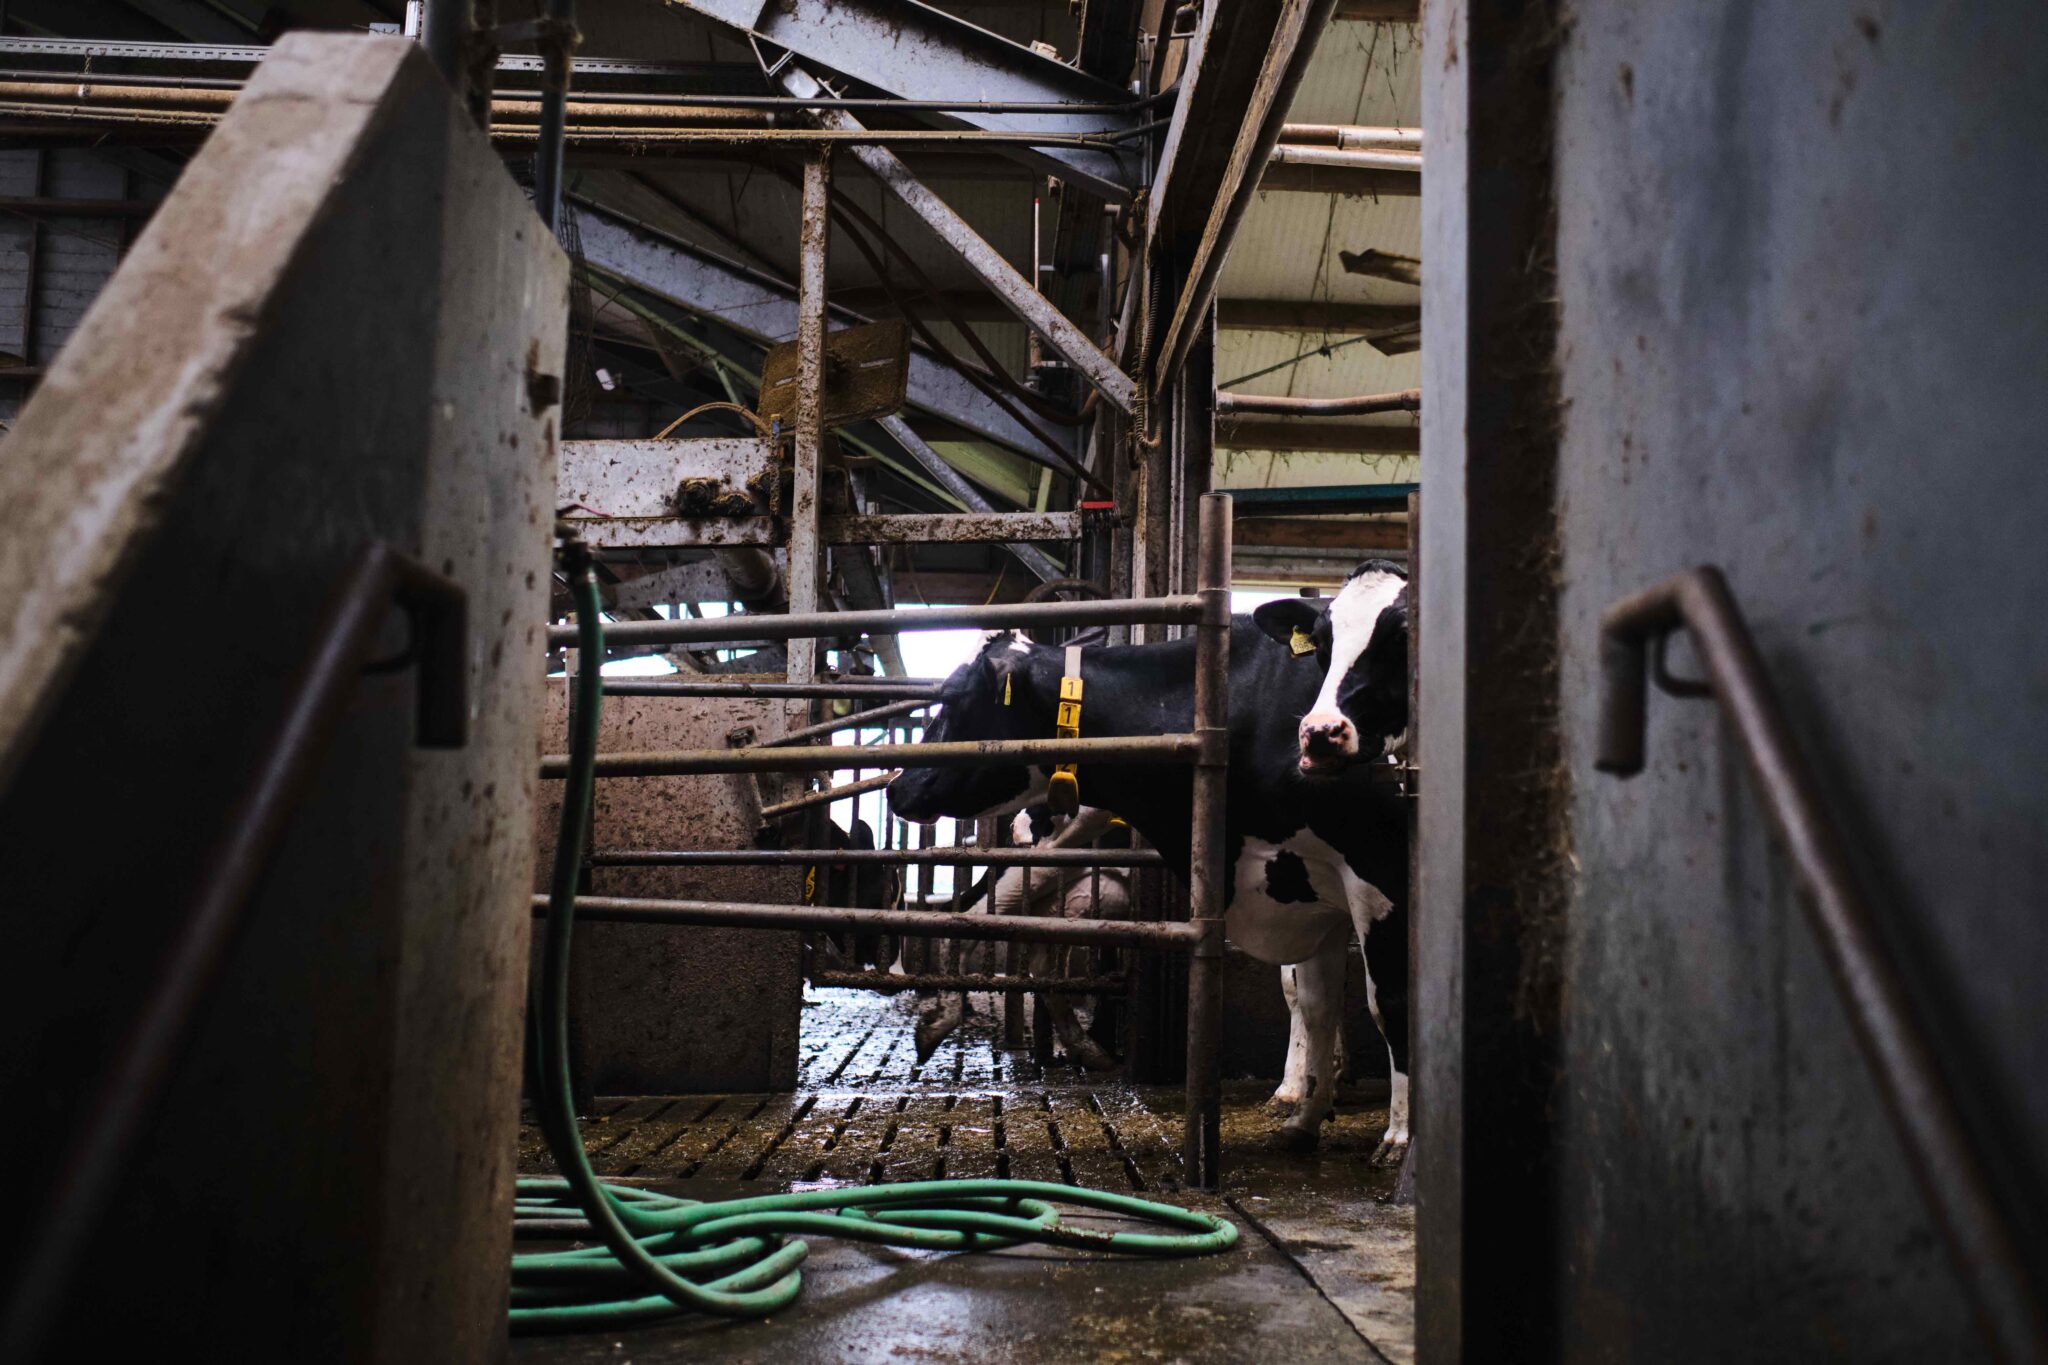 Vaches laitières sur le campus laitier de l'université de Waginengen à Leeuwarden, aux Pays-Bas. Image par Ashoka Mukpo / Mongabay.